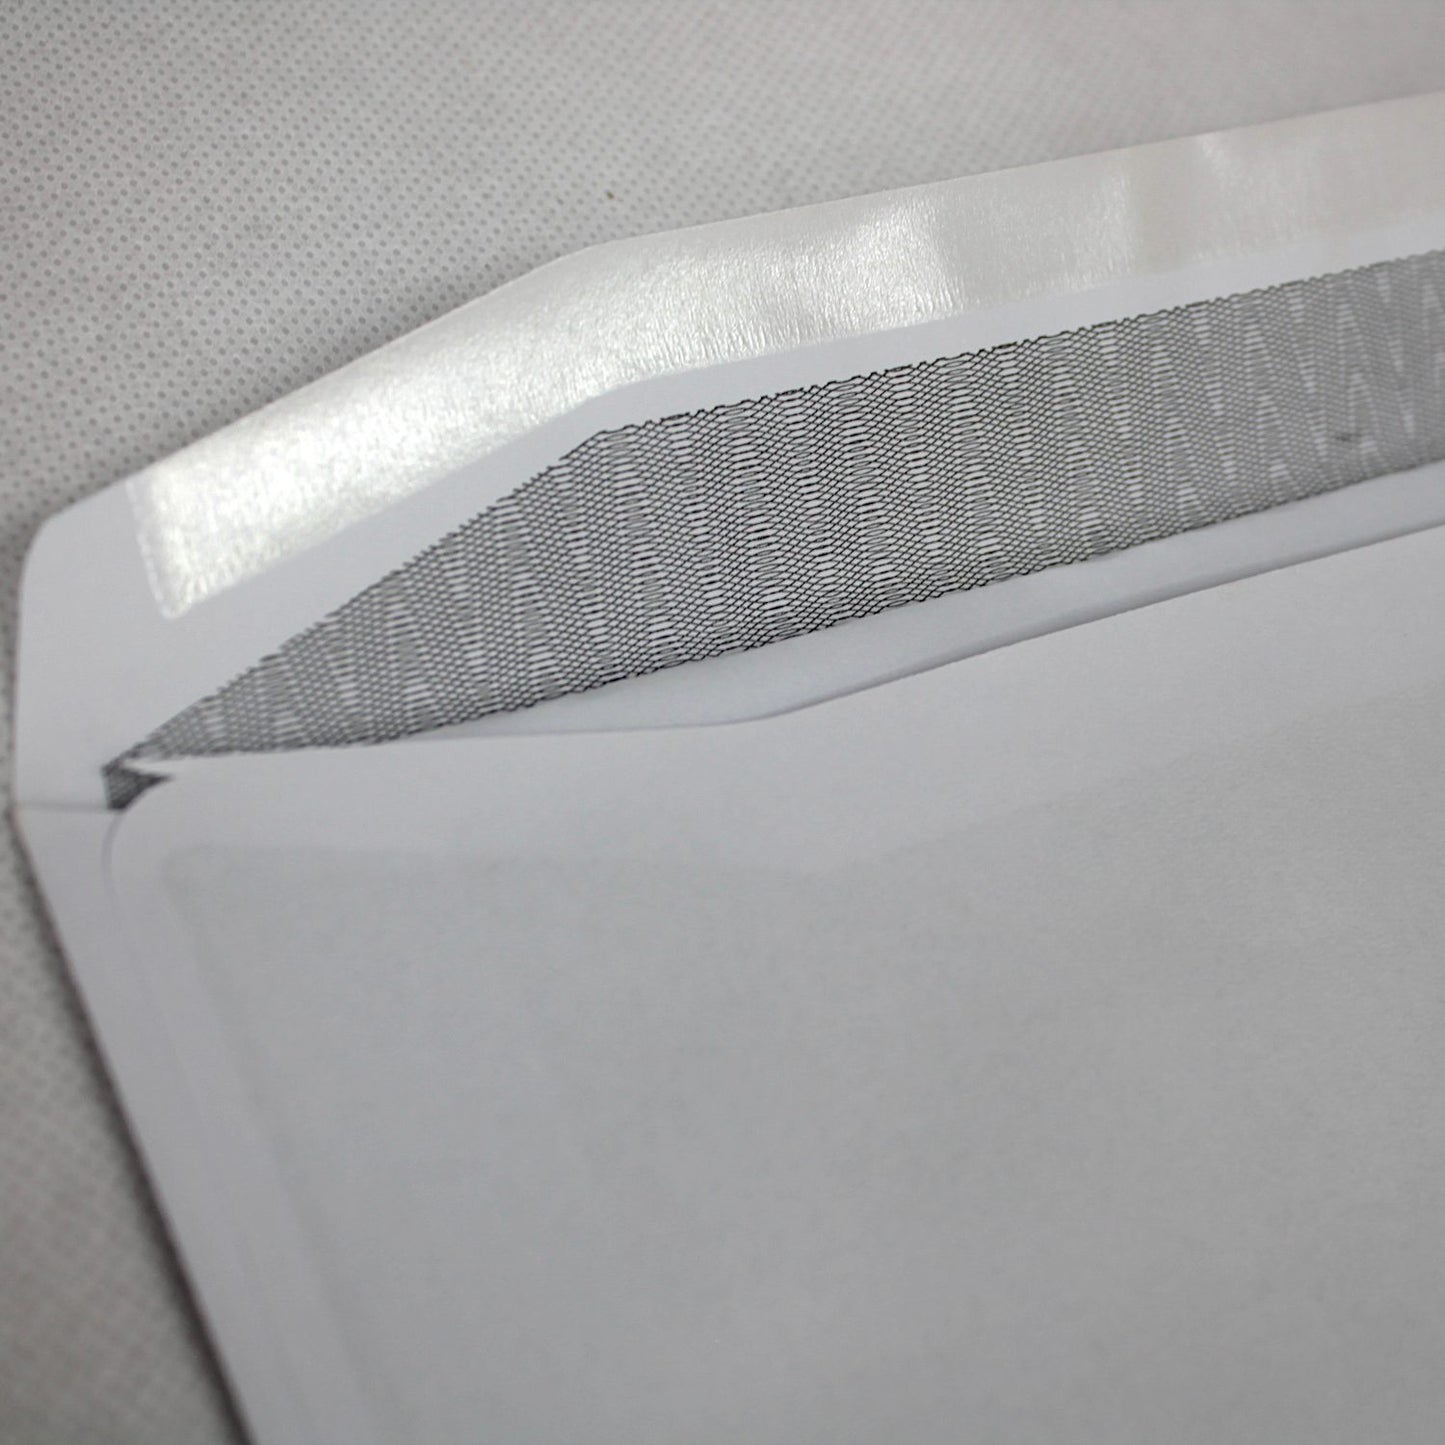 102x216mm White Gummed Envelopes (None Window)